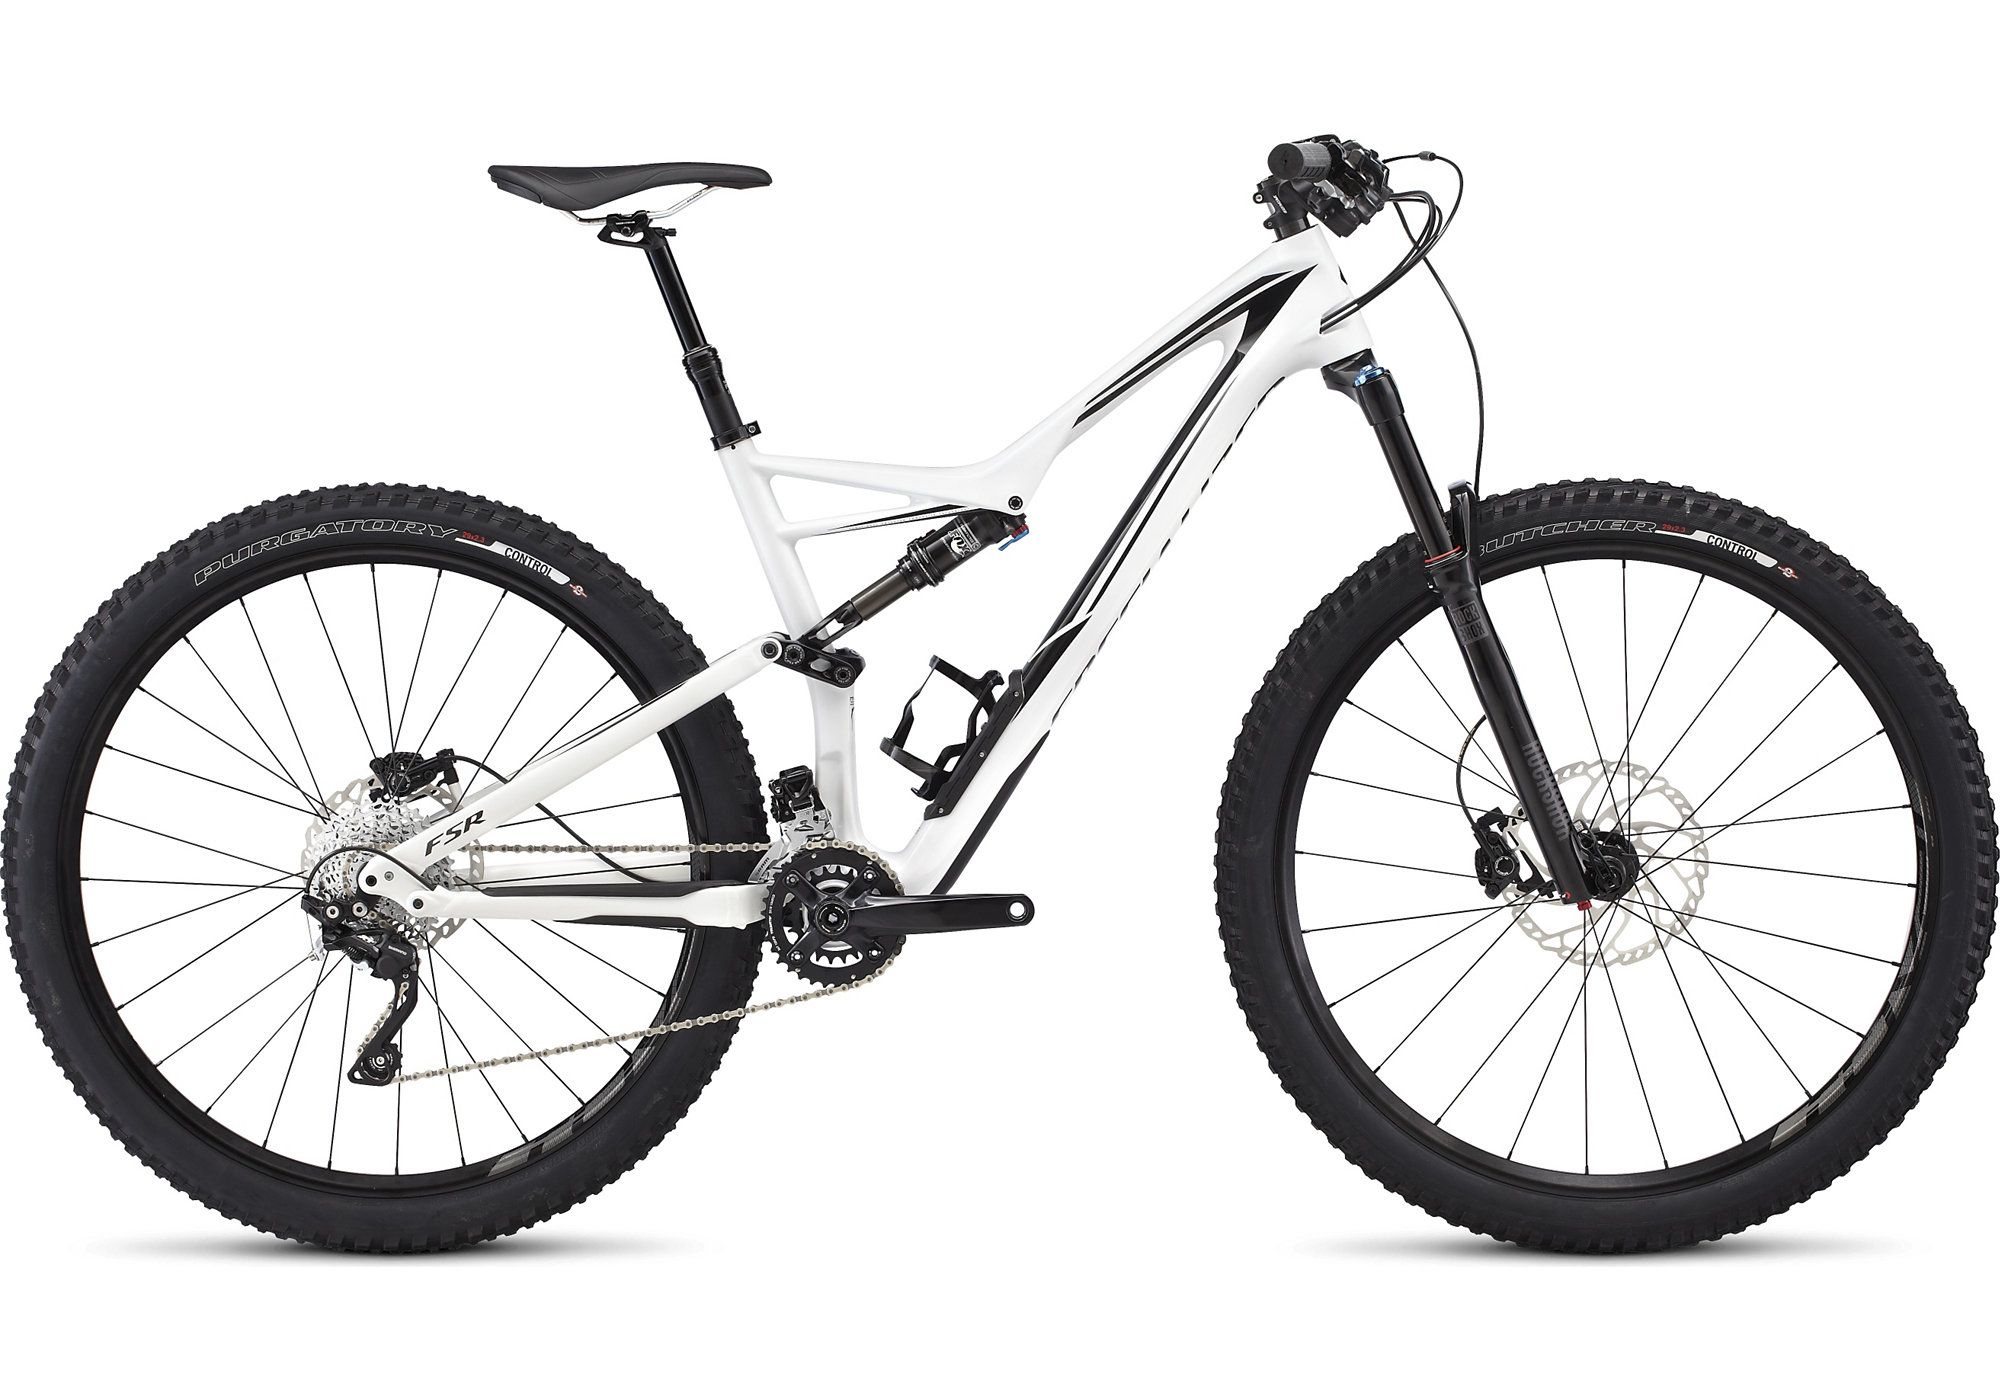  Отзывы о Двухподвесном велосипеде Specialized Stumpjumper FSR Comp Carbon 29 2016